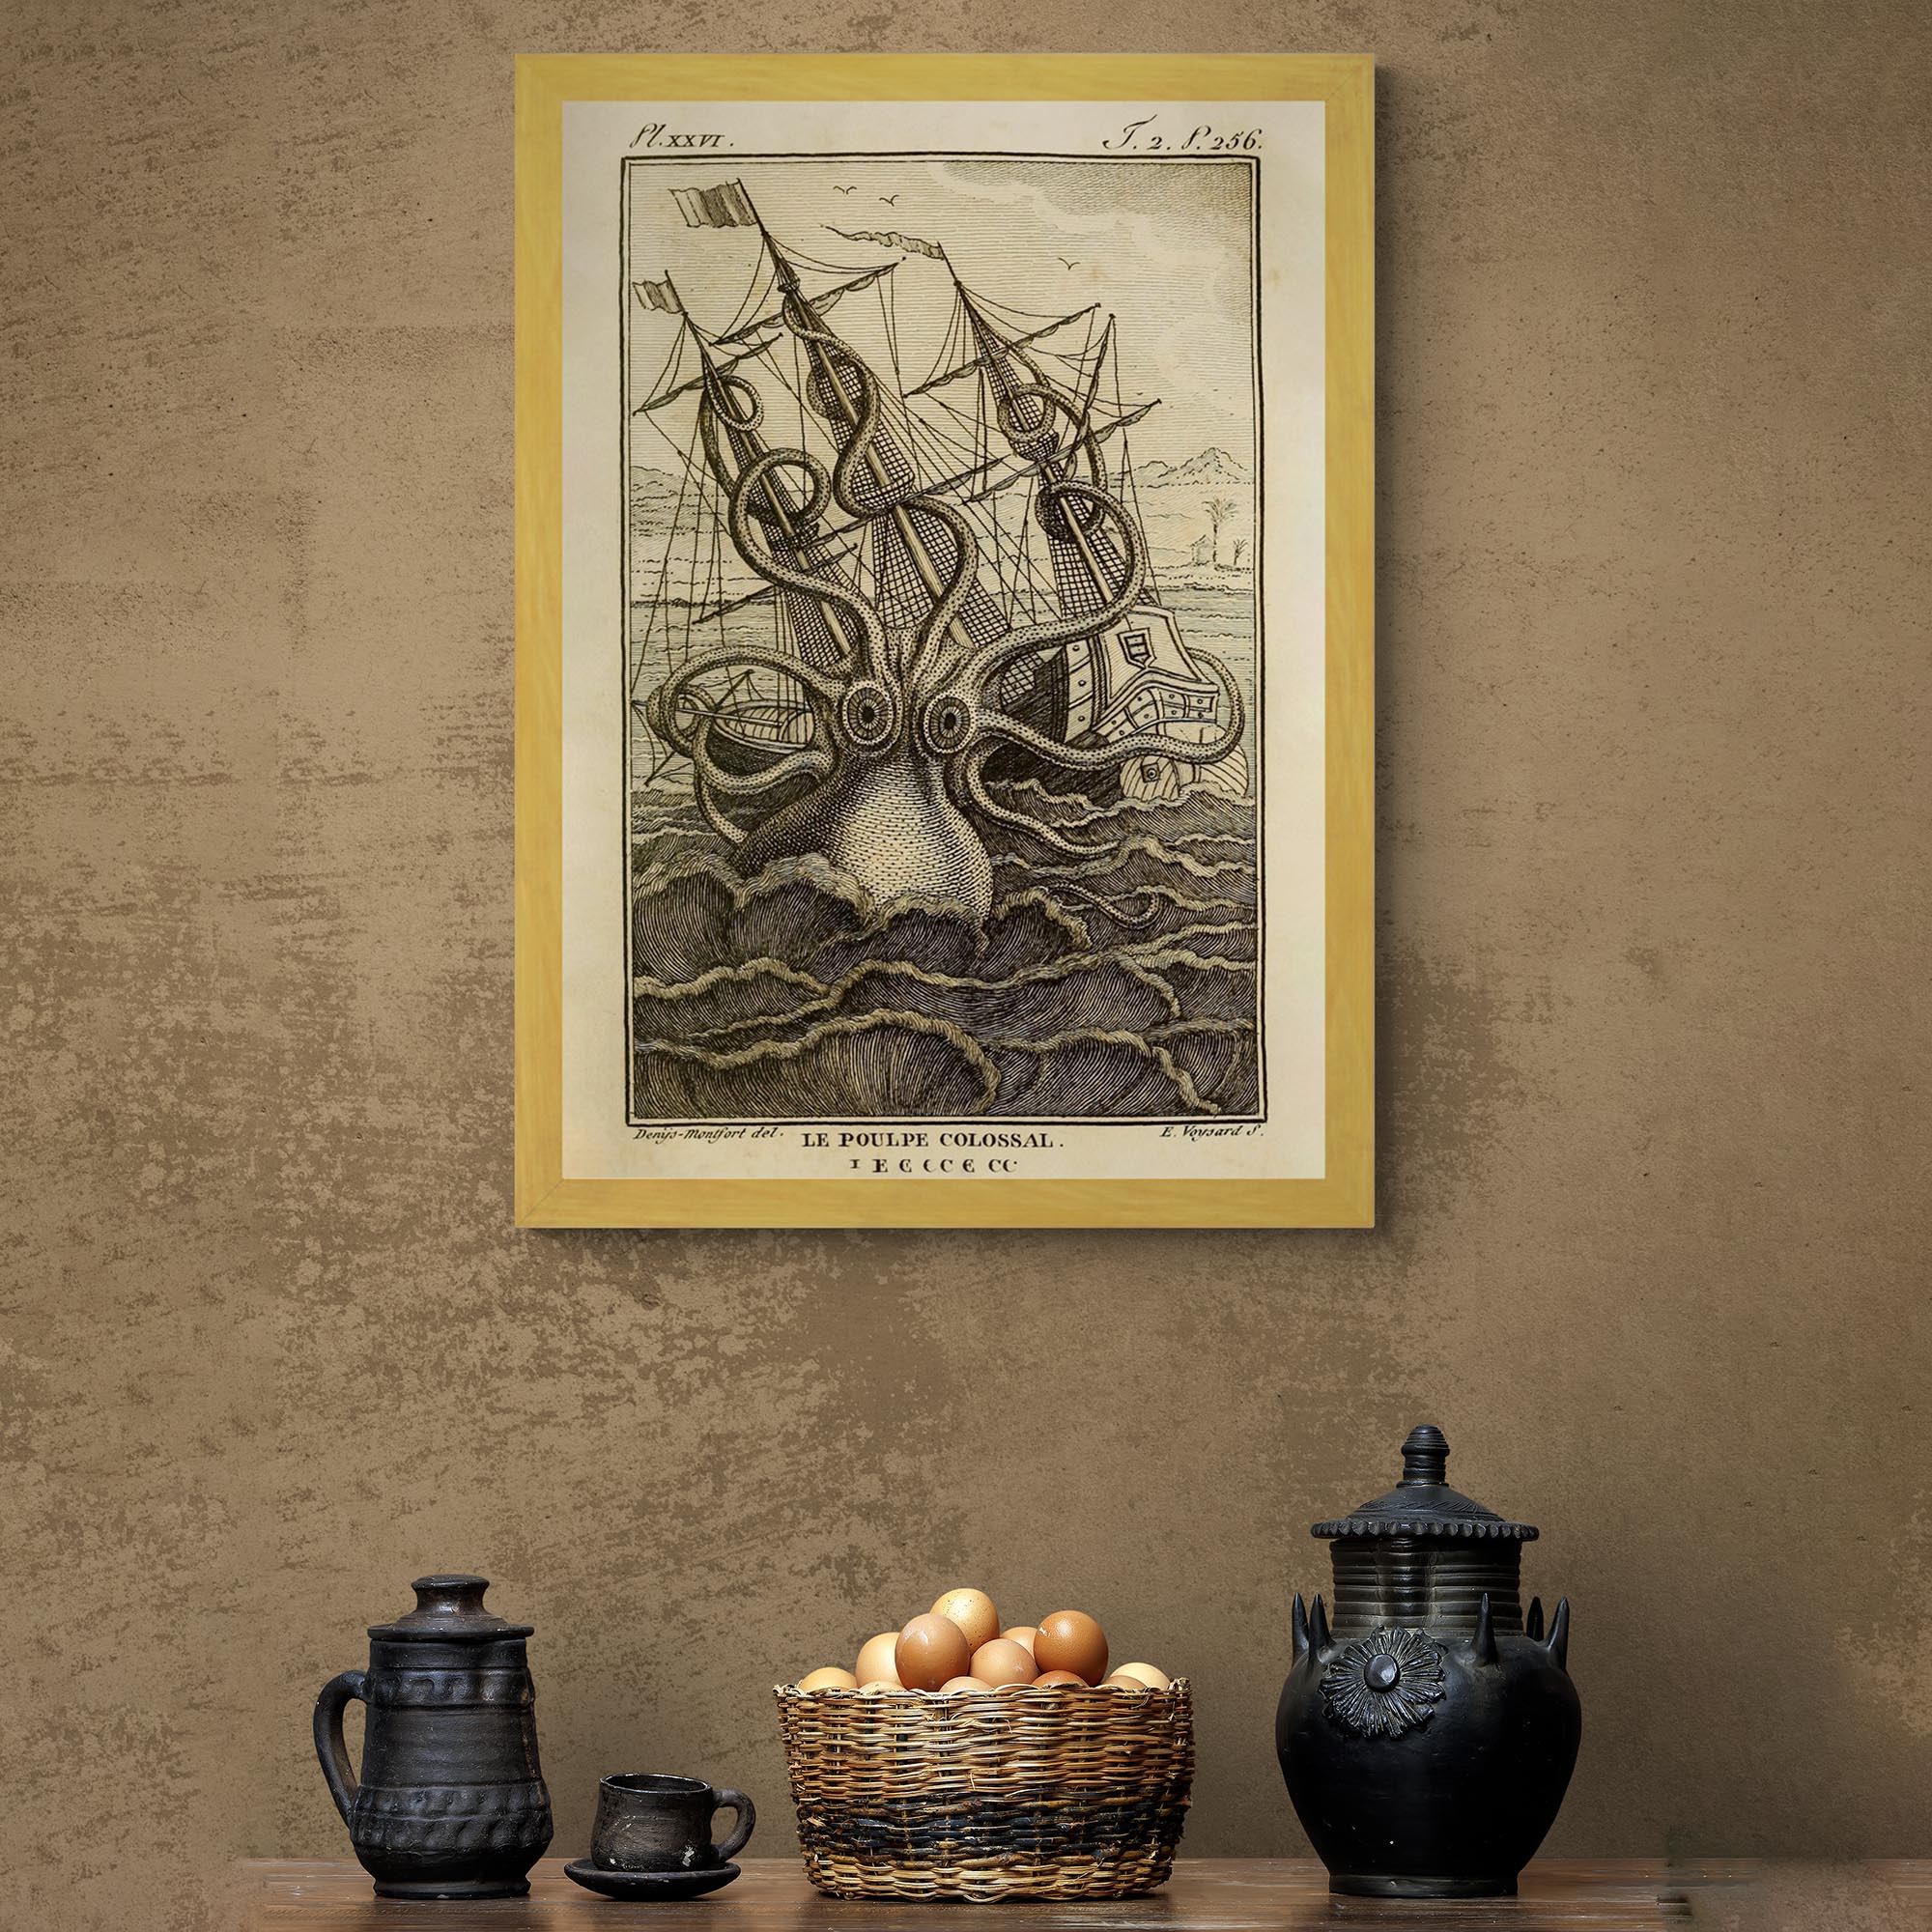 Fine art 8"x12" / Gold Frame Framed Kraken Sea Monster Attacking Ship | Norse Viking Mythology Giant Squid, Octopus Antique Framed Fine Art Print